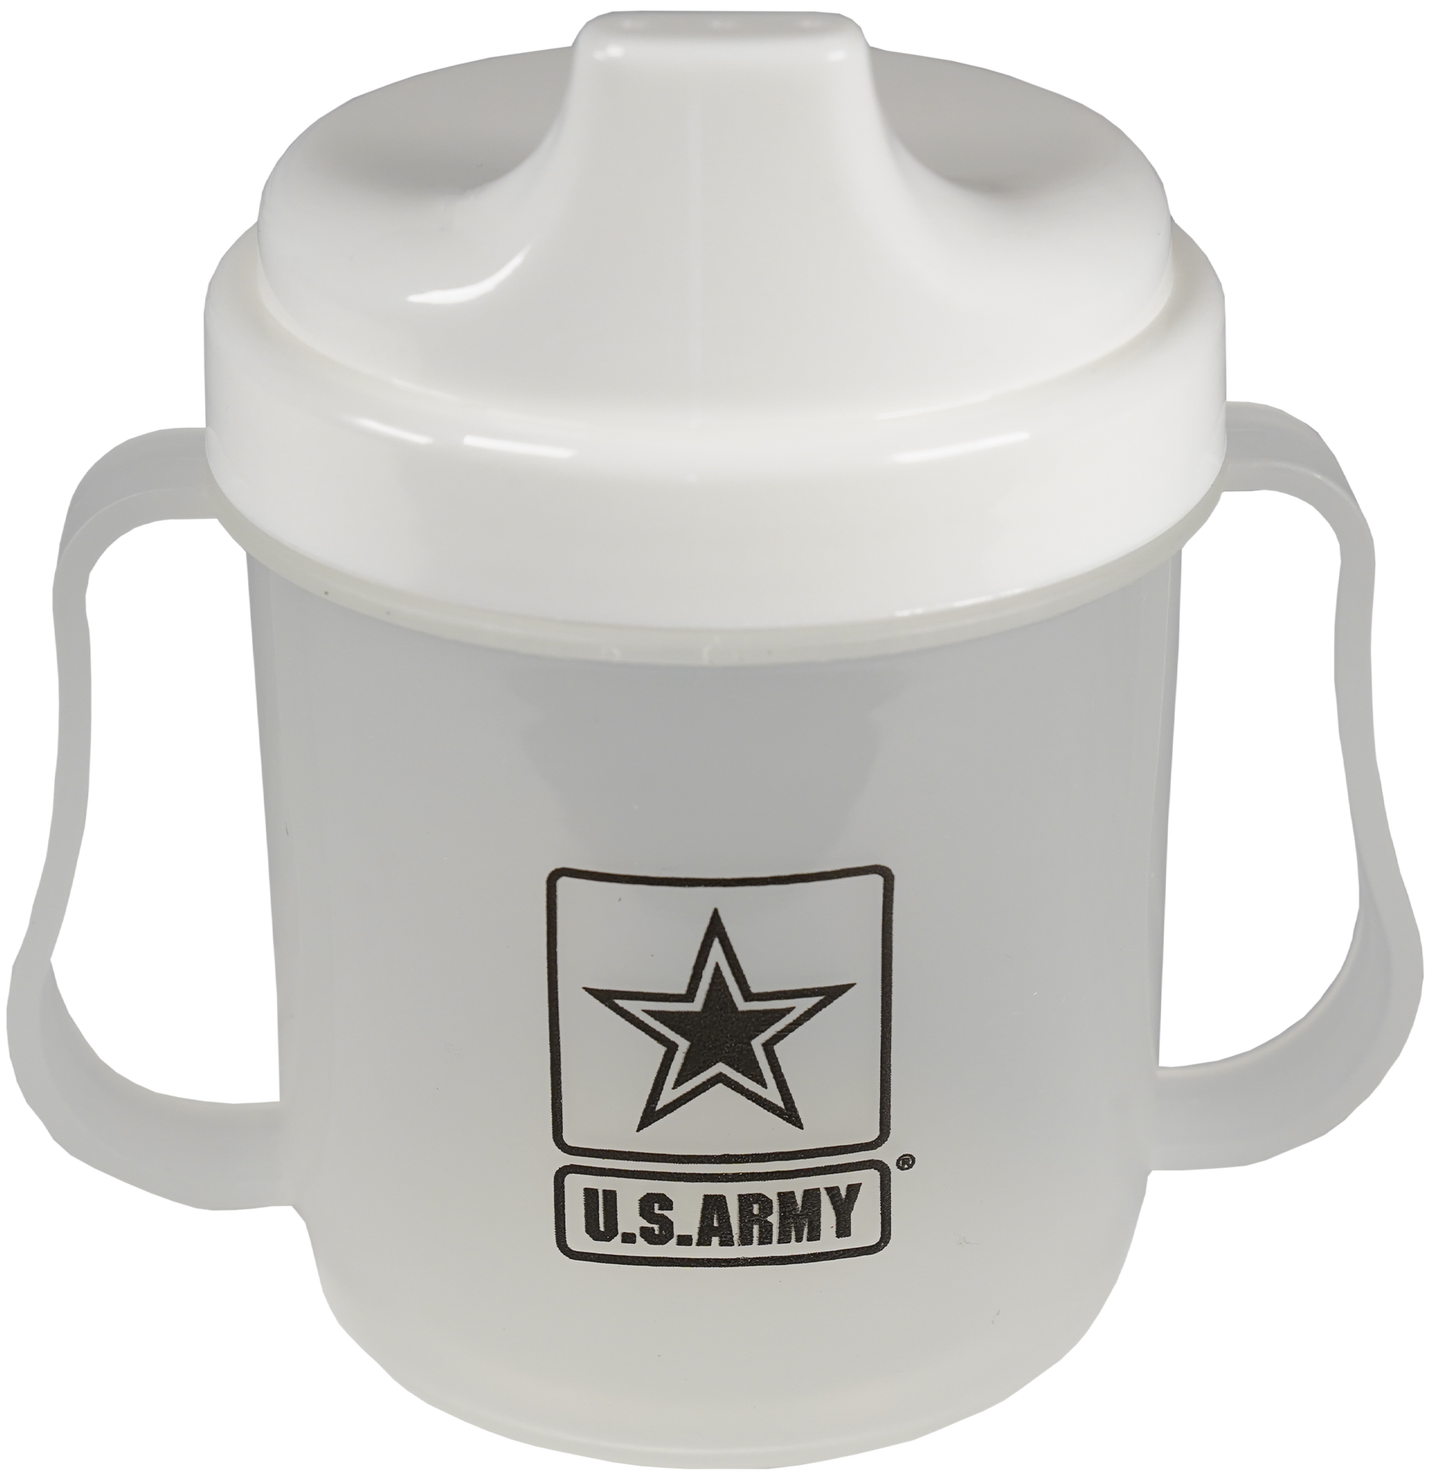 U.S. Army Star on 5 oz. Clear Sippy Cup